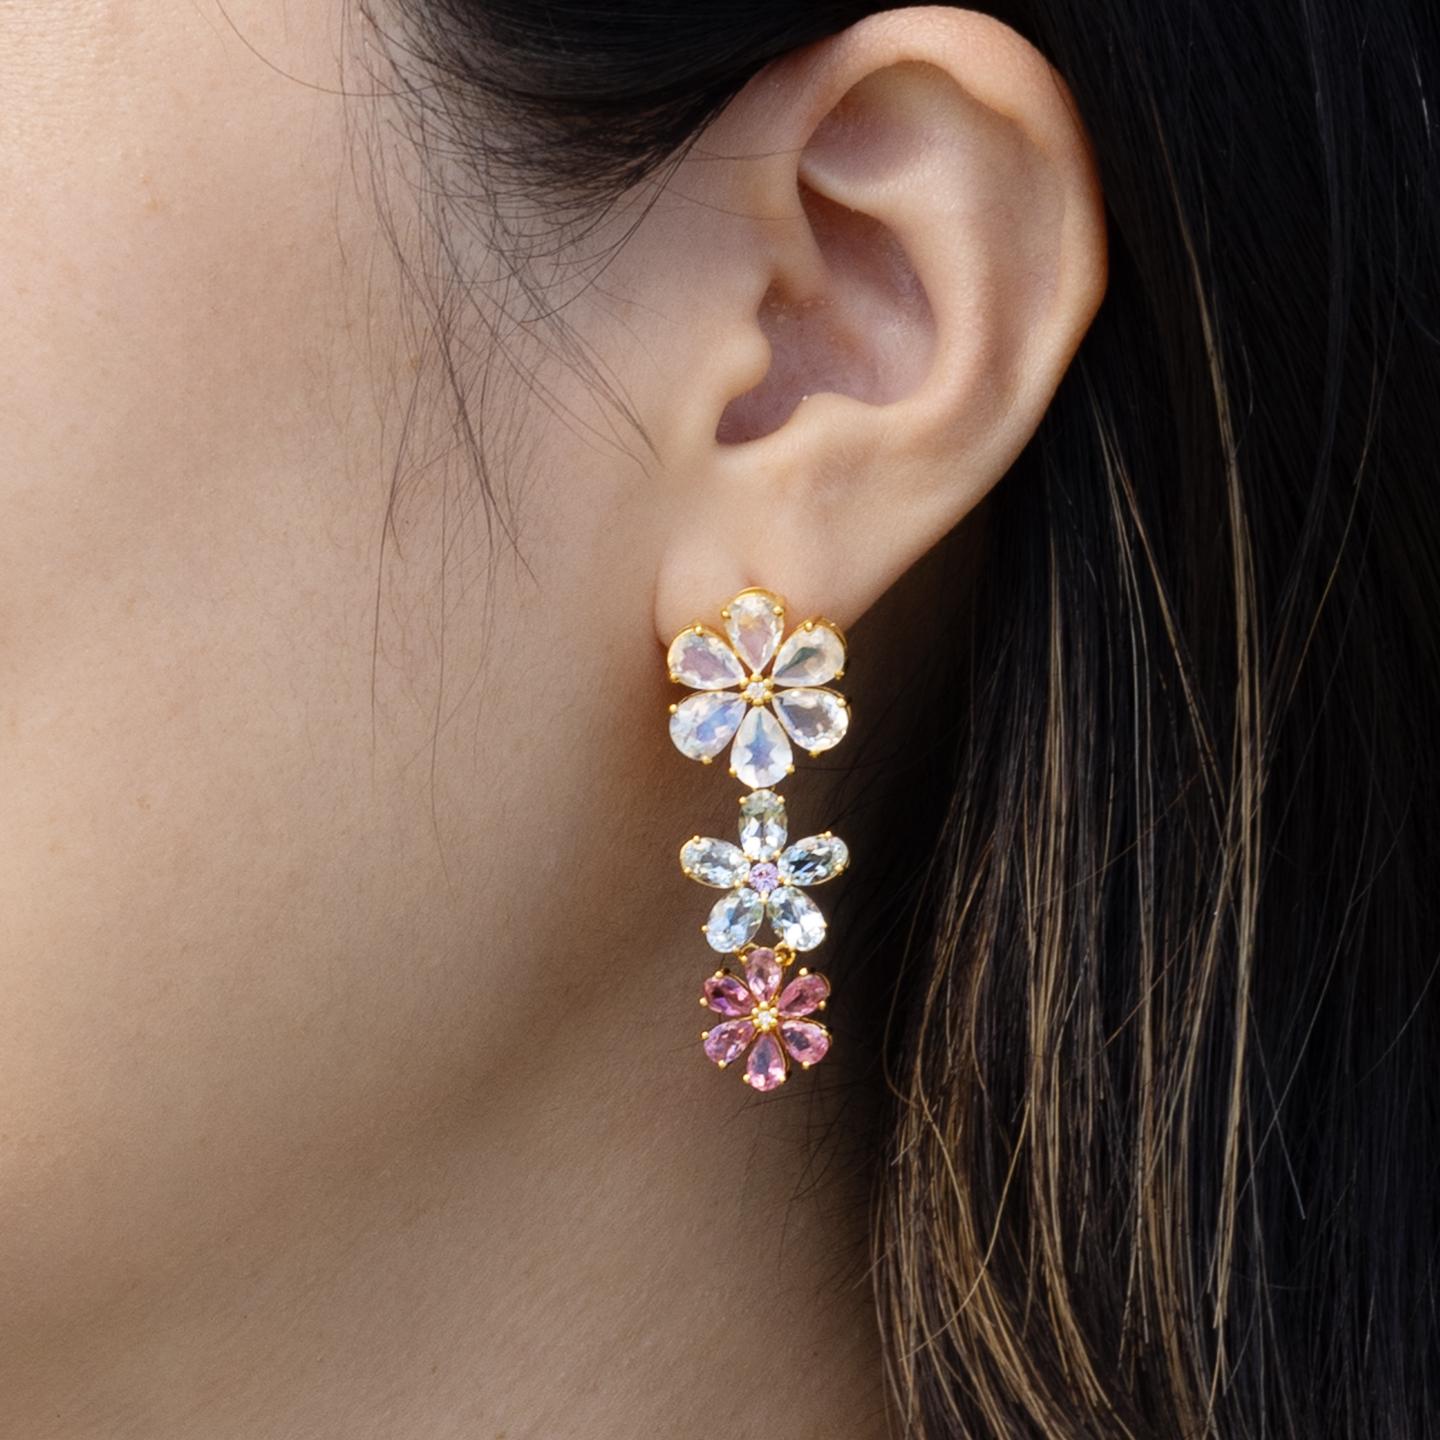 Nina Zhou's Moonstone Aquamarine Pink Sapphire Diamond Blossom Earrings, sorgfältig in 14k Gelbgold gefertigt. Diese bezaubernden Ohrringe sind mit einem verführerischen Mondstein besetzt, der für seinen fesselnden Glanz und das subtile Spiel des